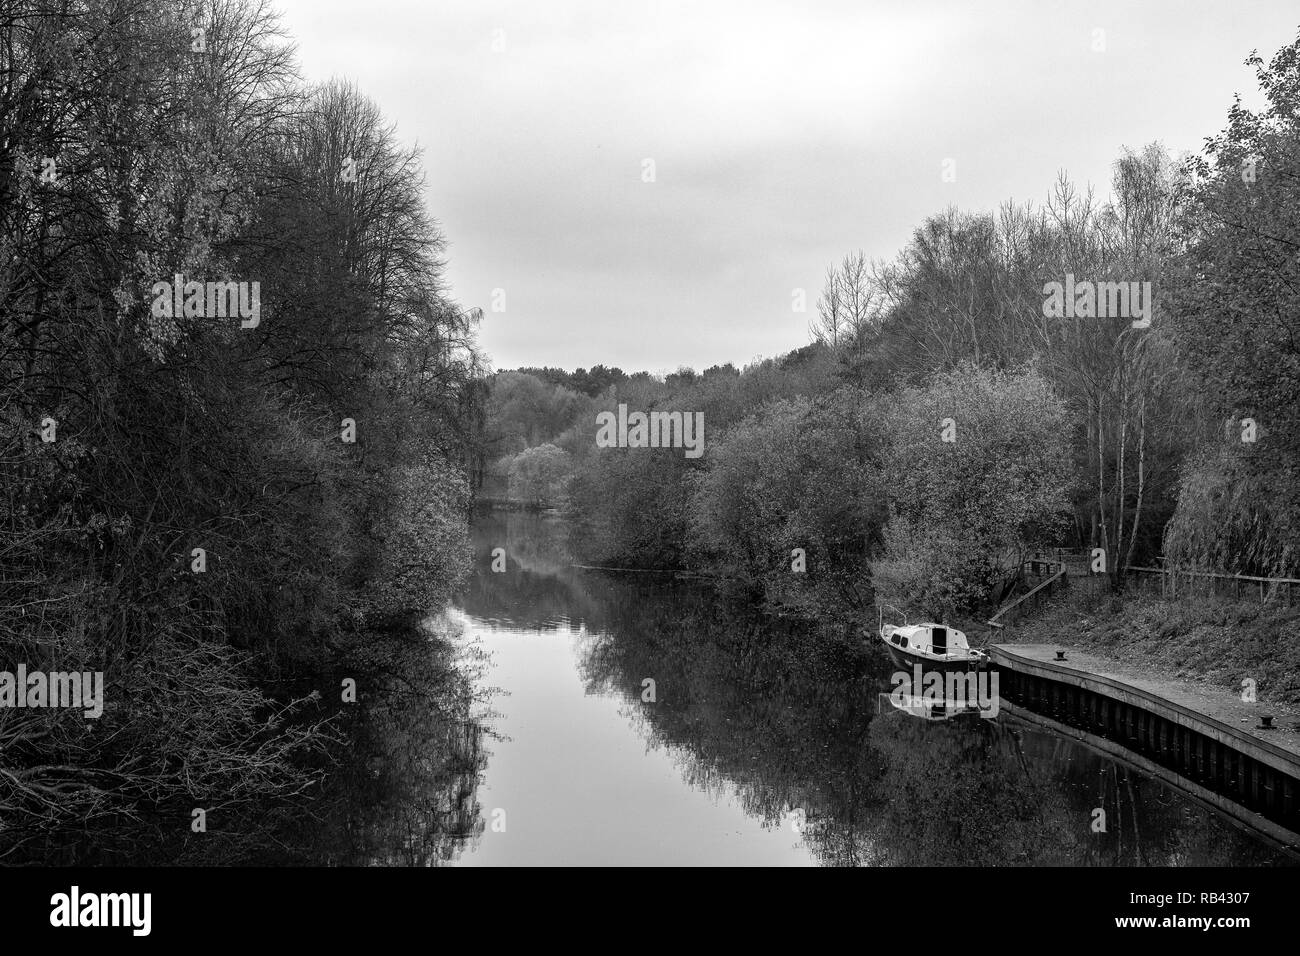 Bateau abandonné en noir et blanc sur la rivière Weaver dans London Cheshire UK Banque D'Images